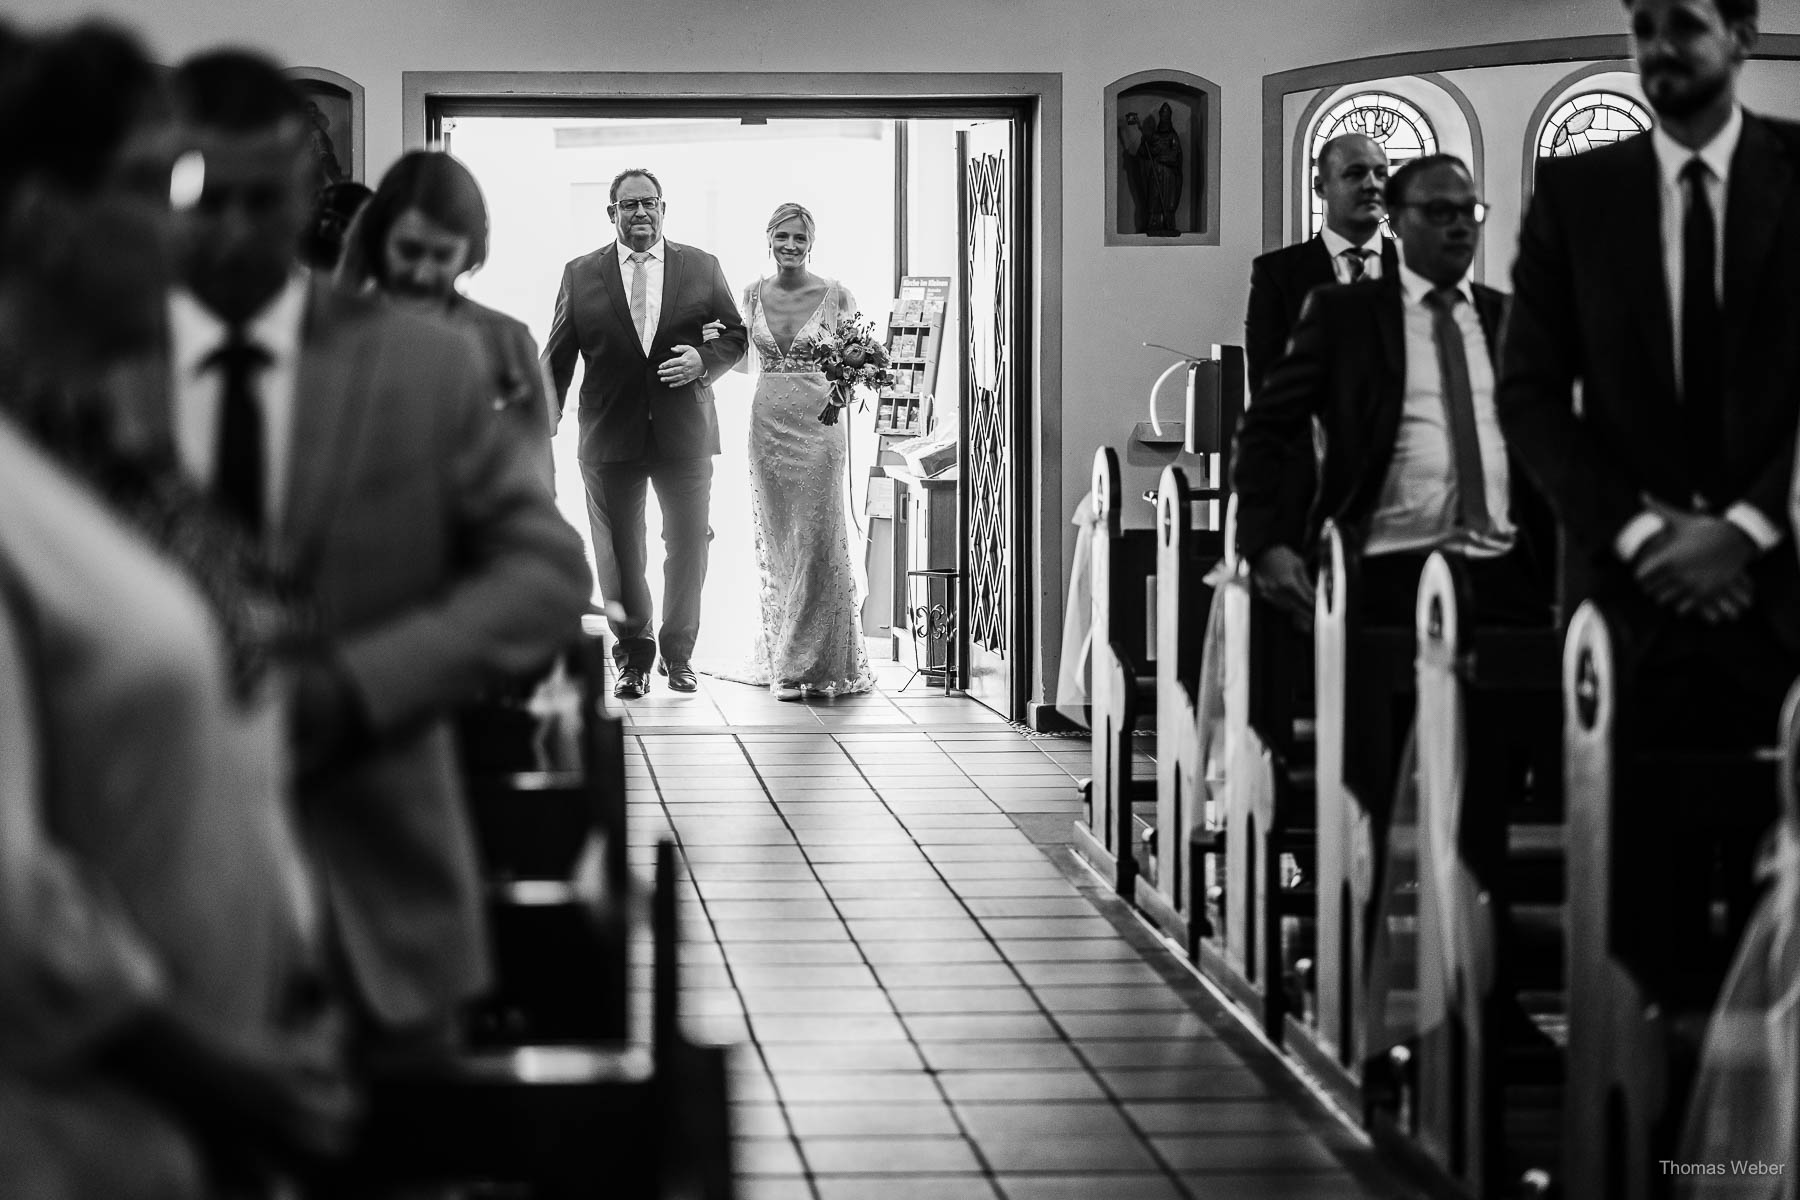 Kirchliche Hochzeit in Rastede, Hochzeitsfotograf Thomas Weber aus Rastede